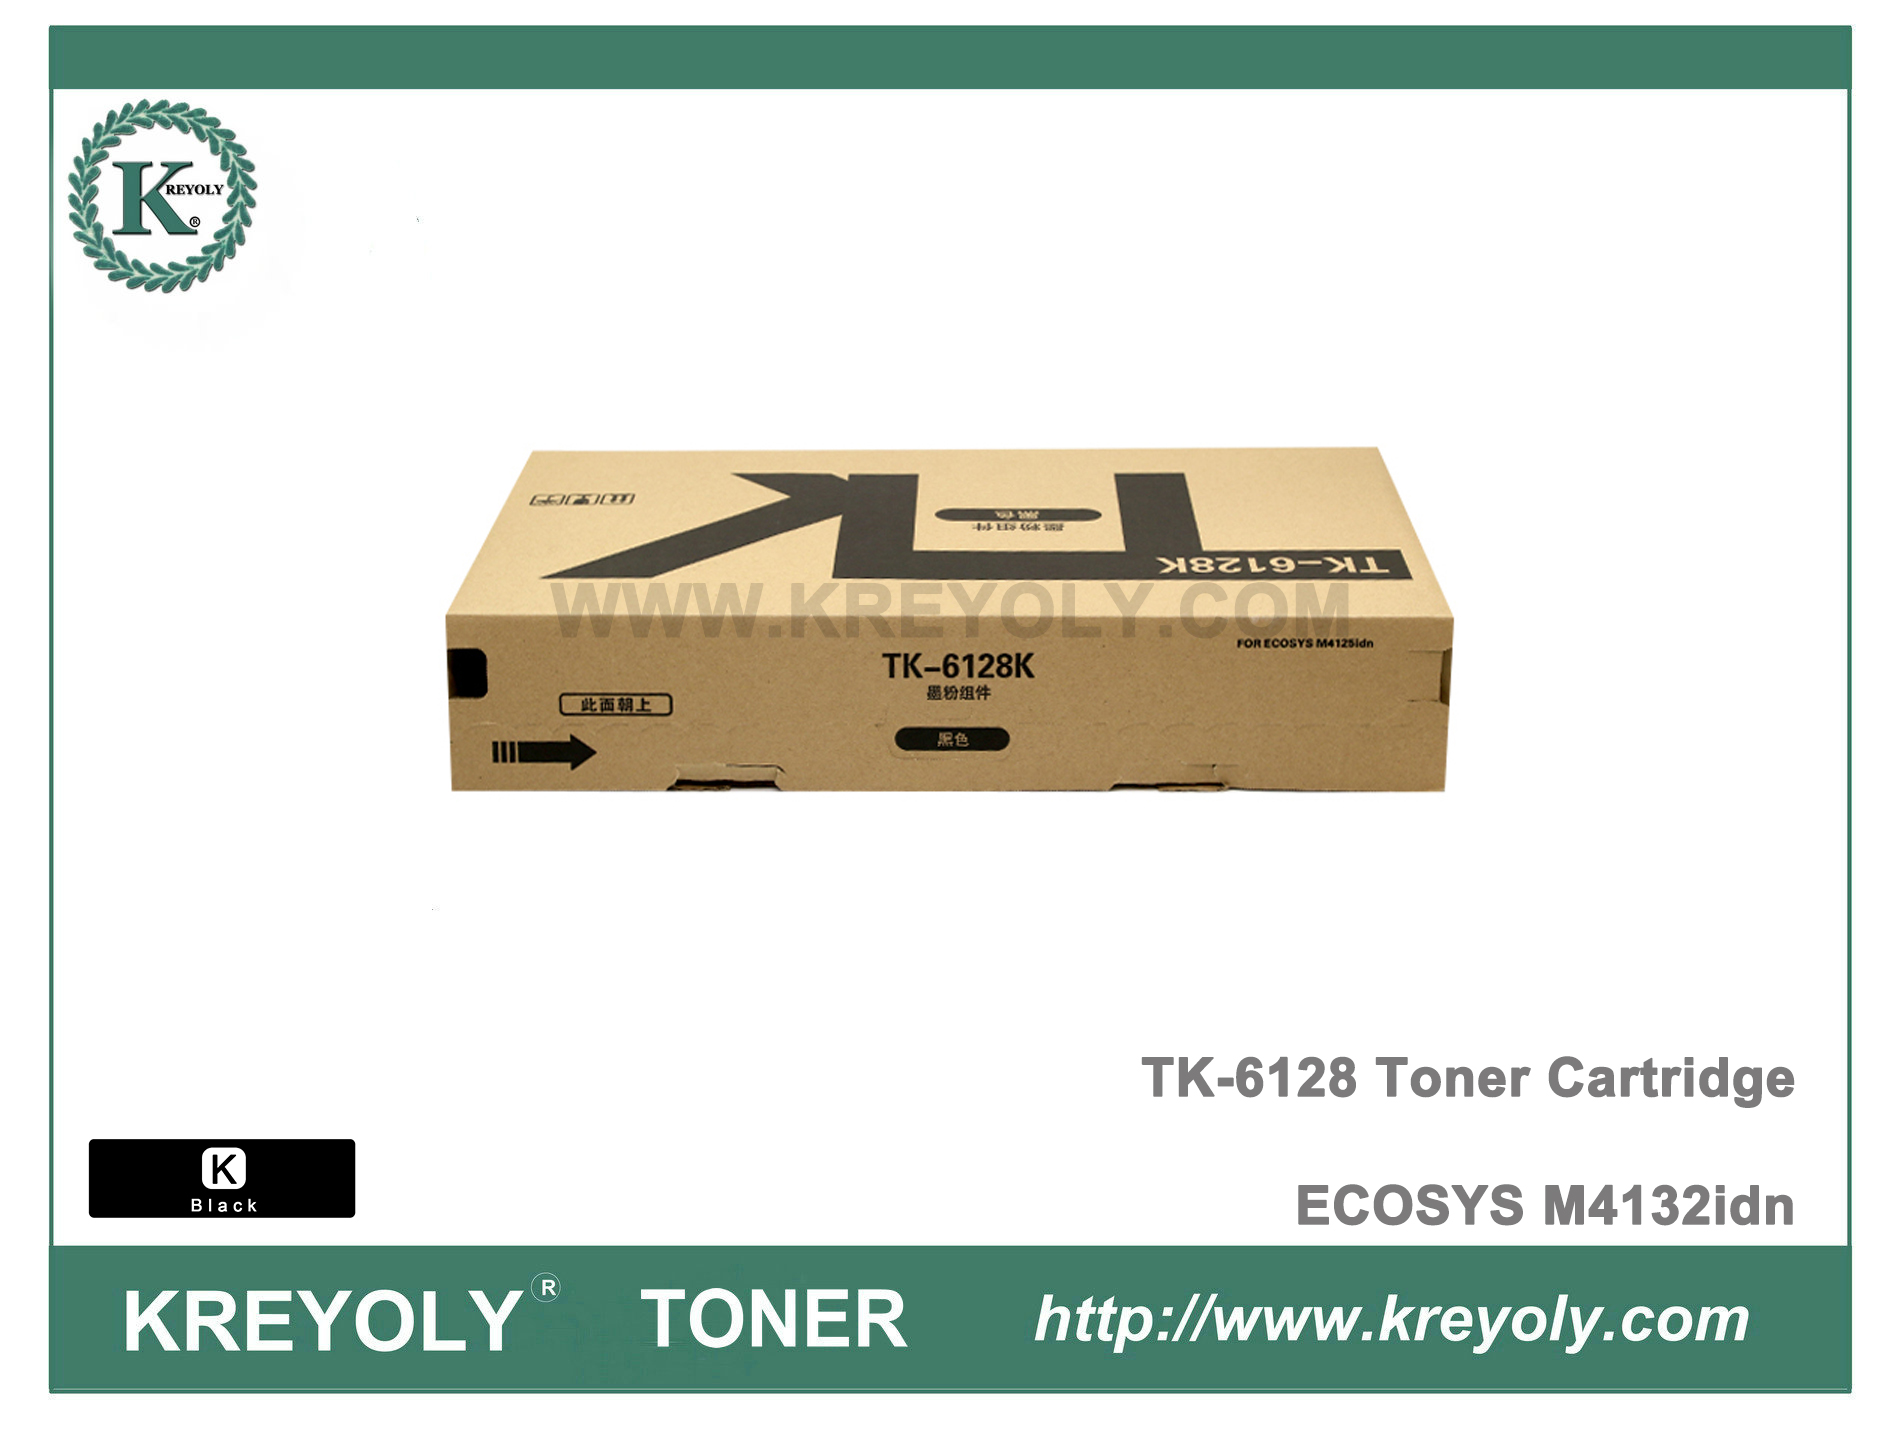 Cartucho de tóner TK-6128 para ECOSYS M4132idn